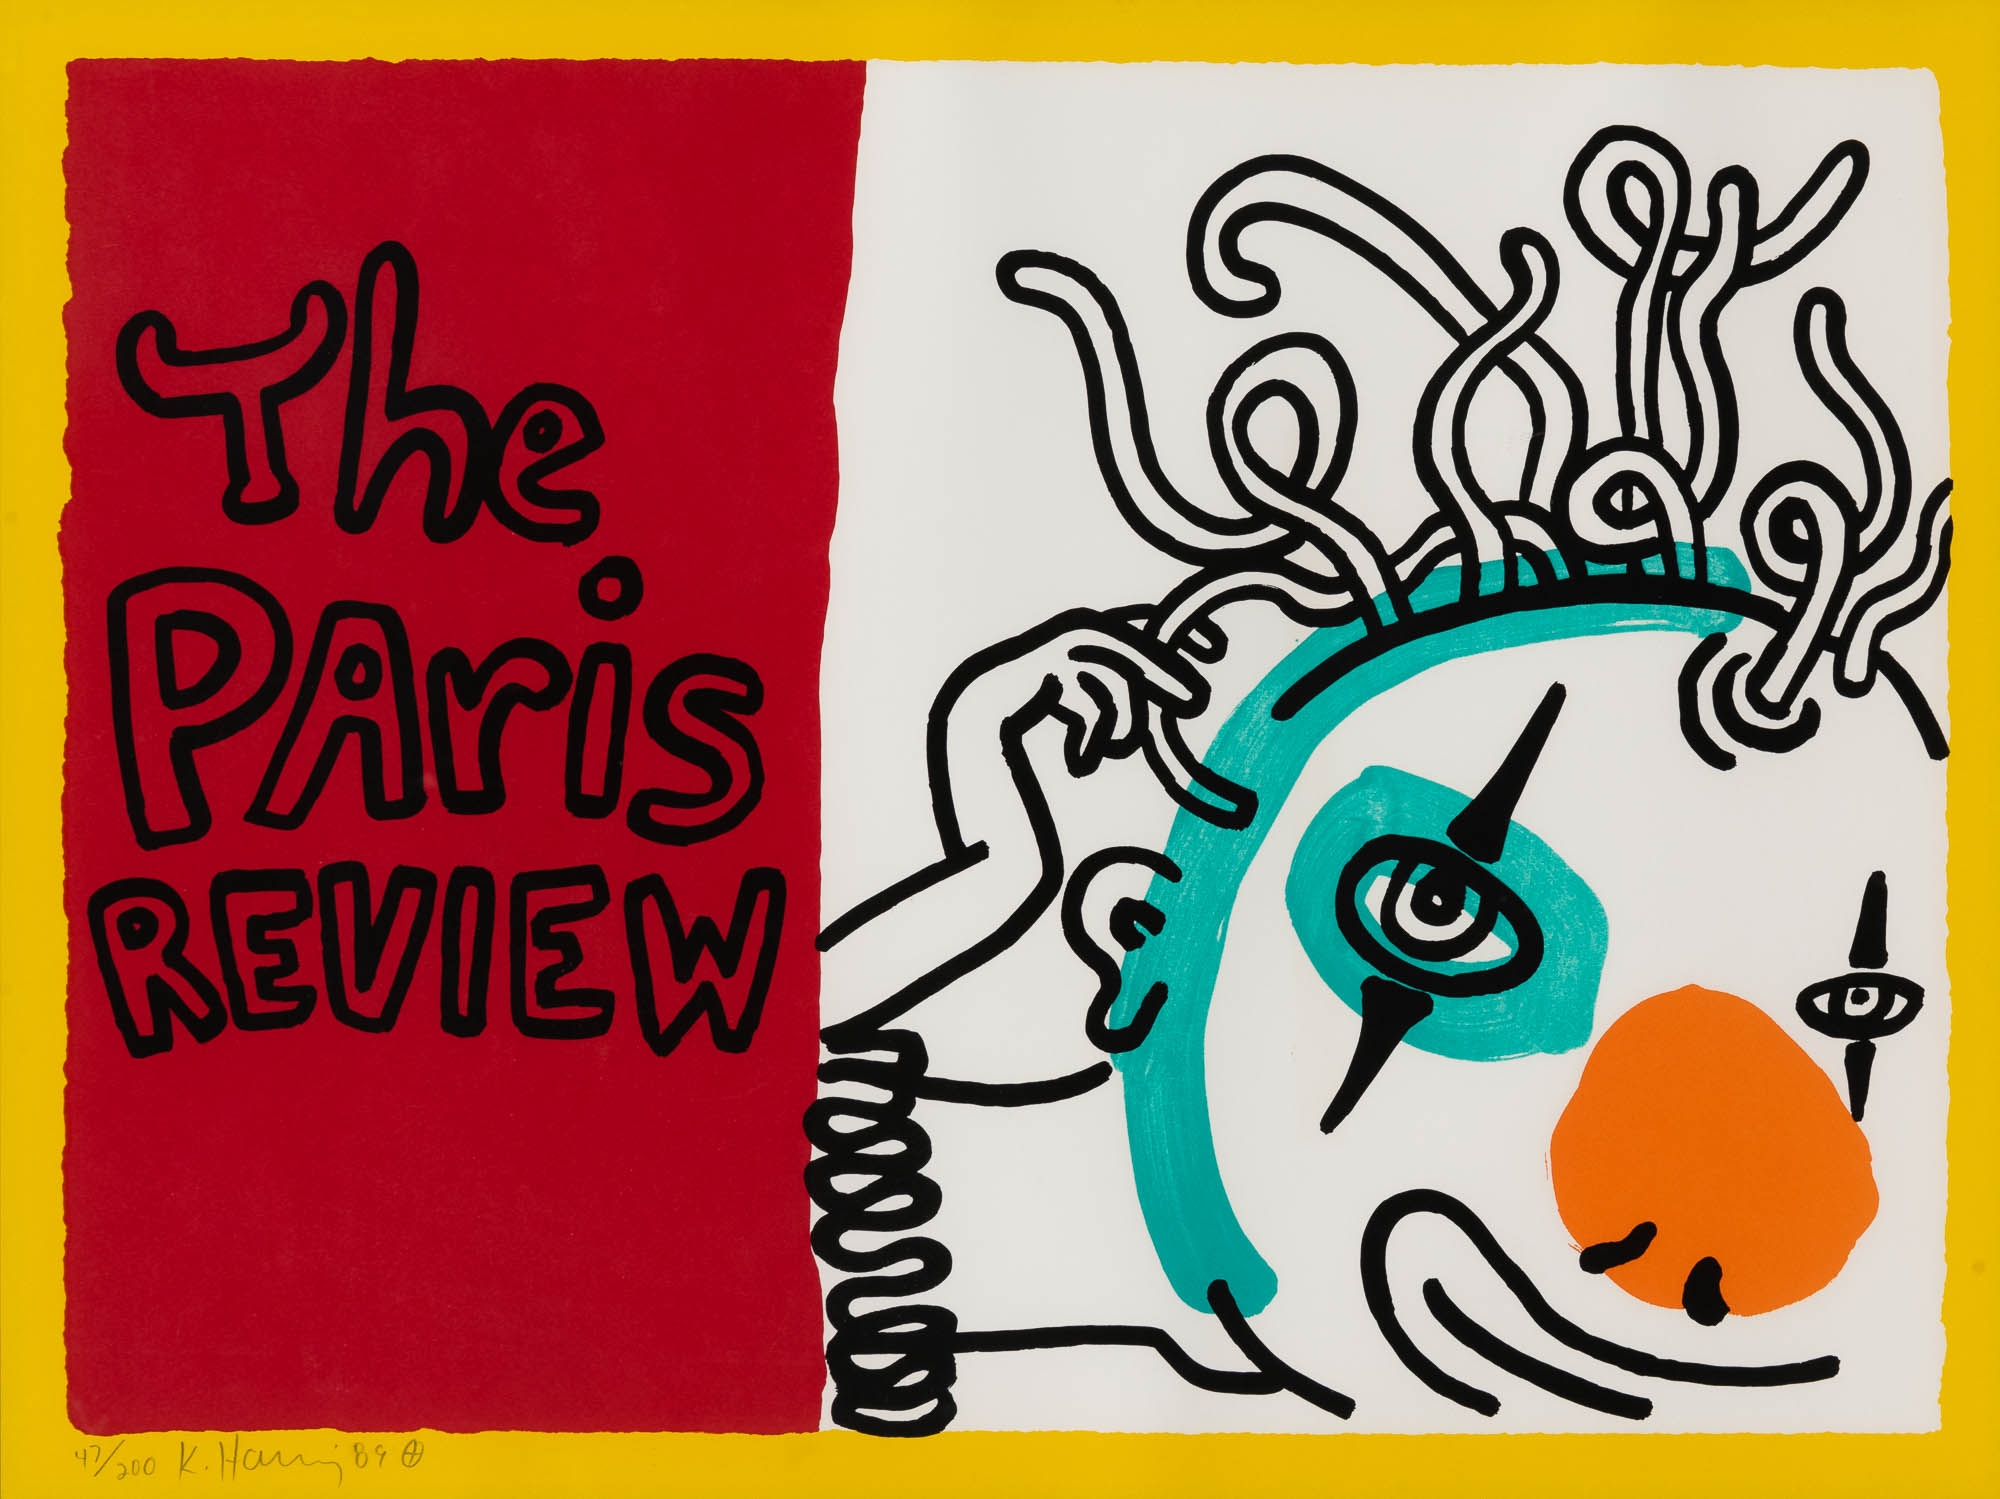 Keith Haring (1958-1990 - Keith Haring